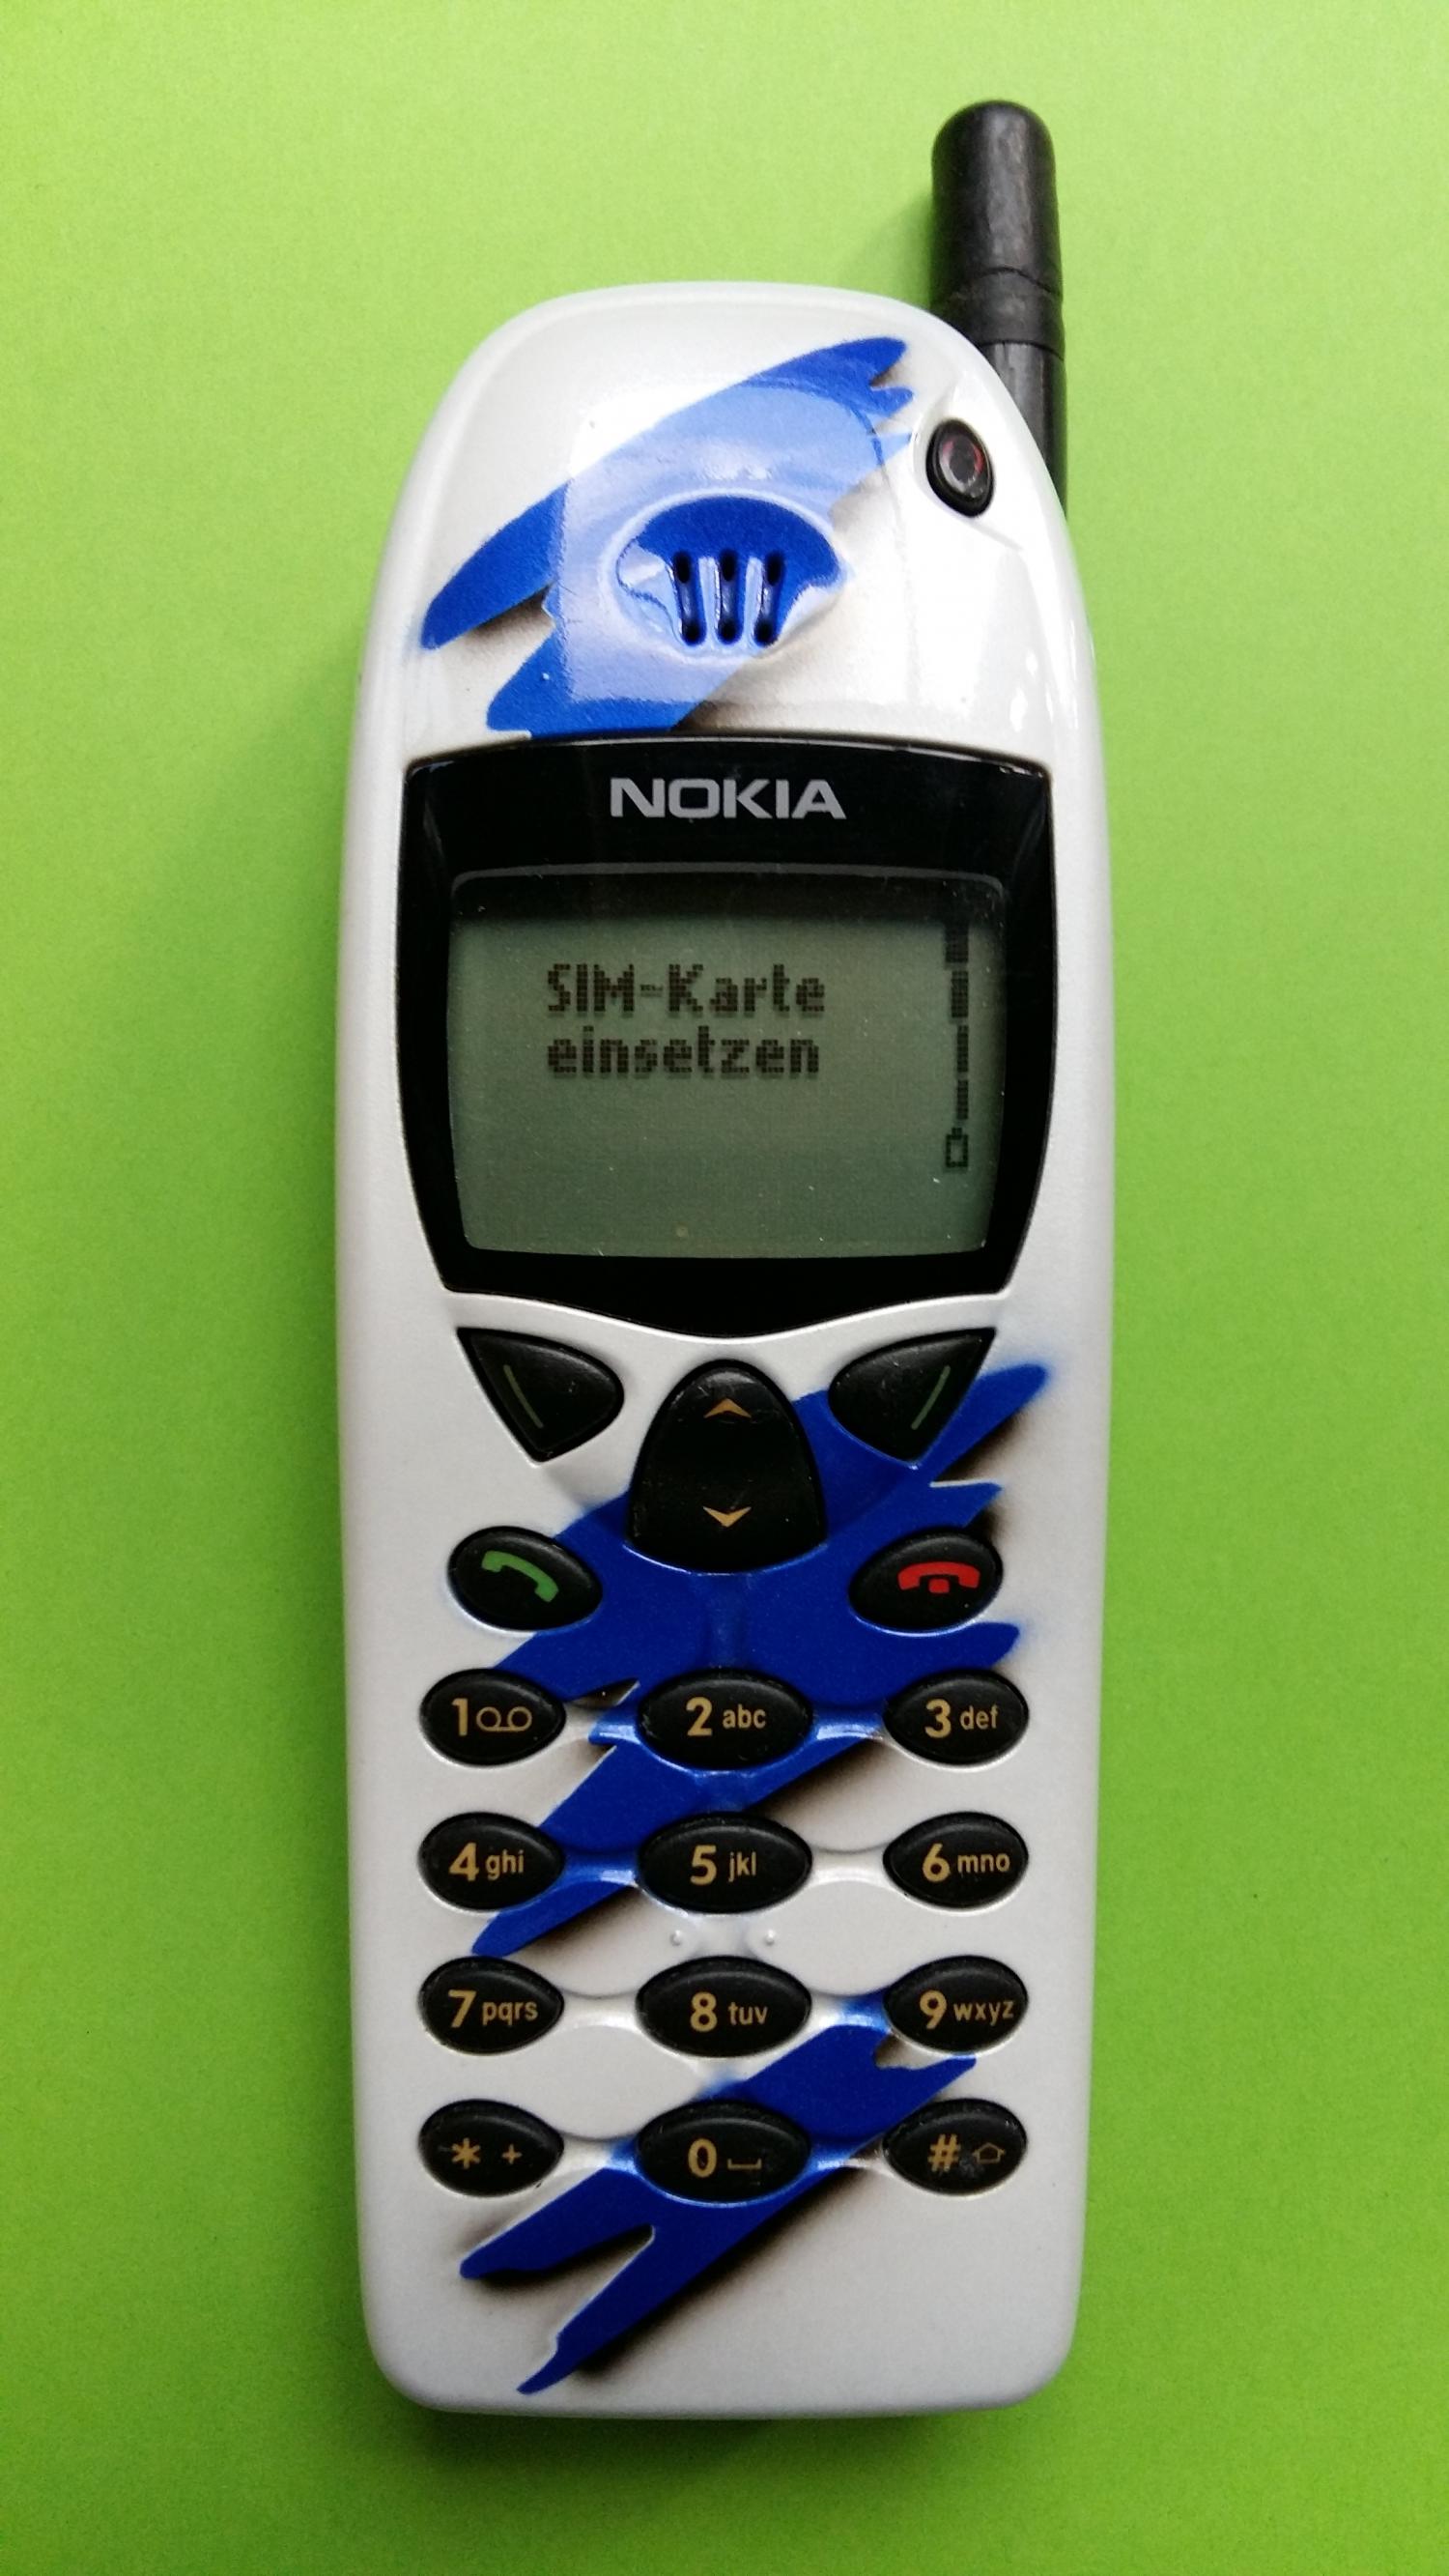 image-7304970-Nokia 6110 (5)1.jpg